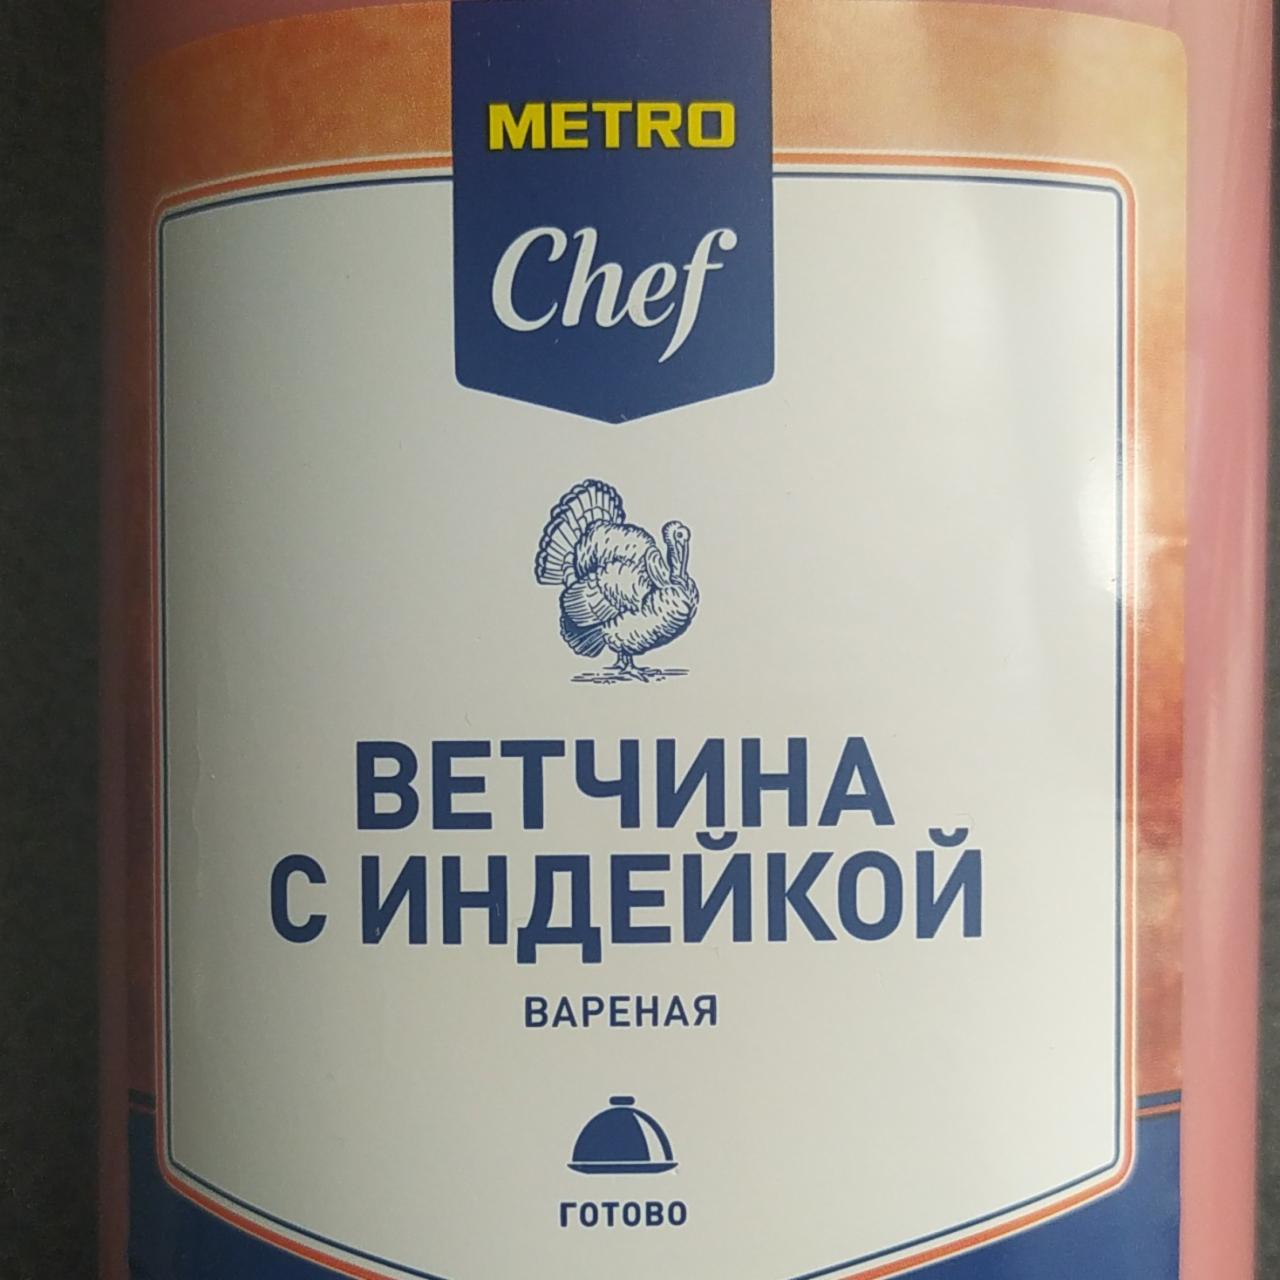 Фото - ветчина с индейкой Metro Chef